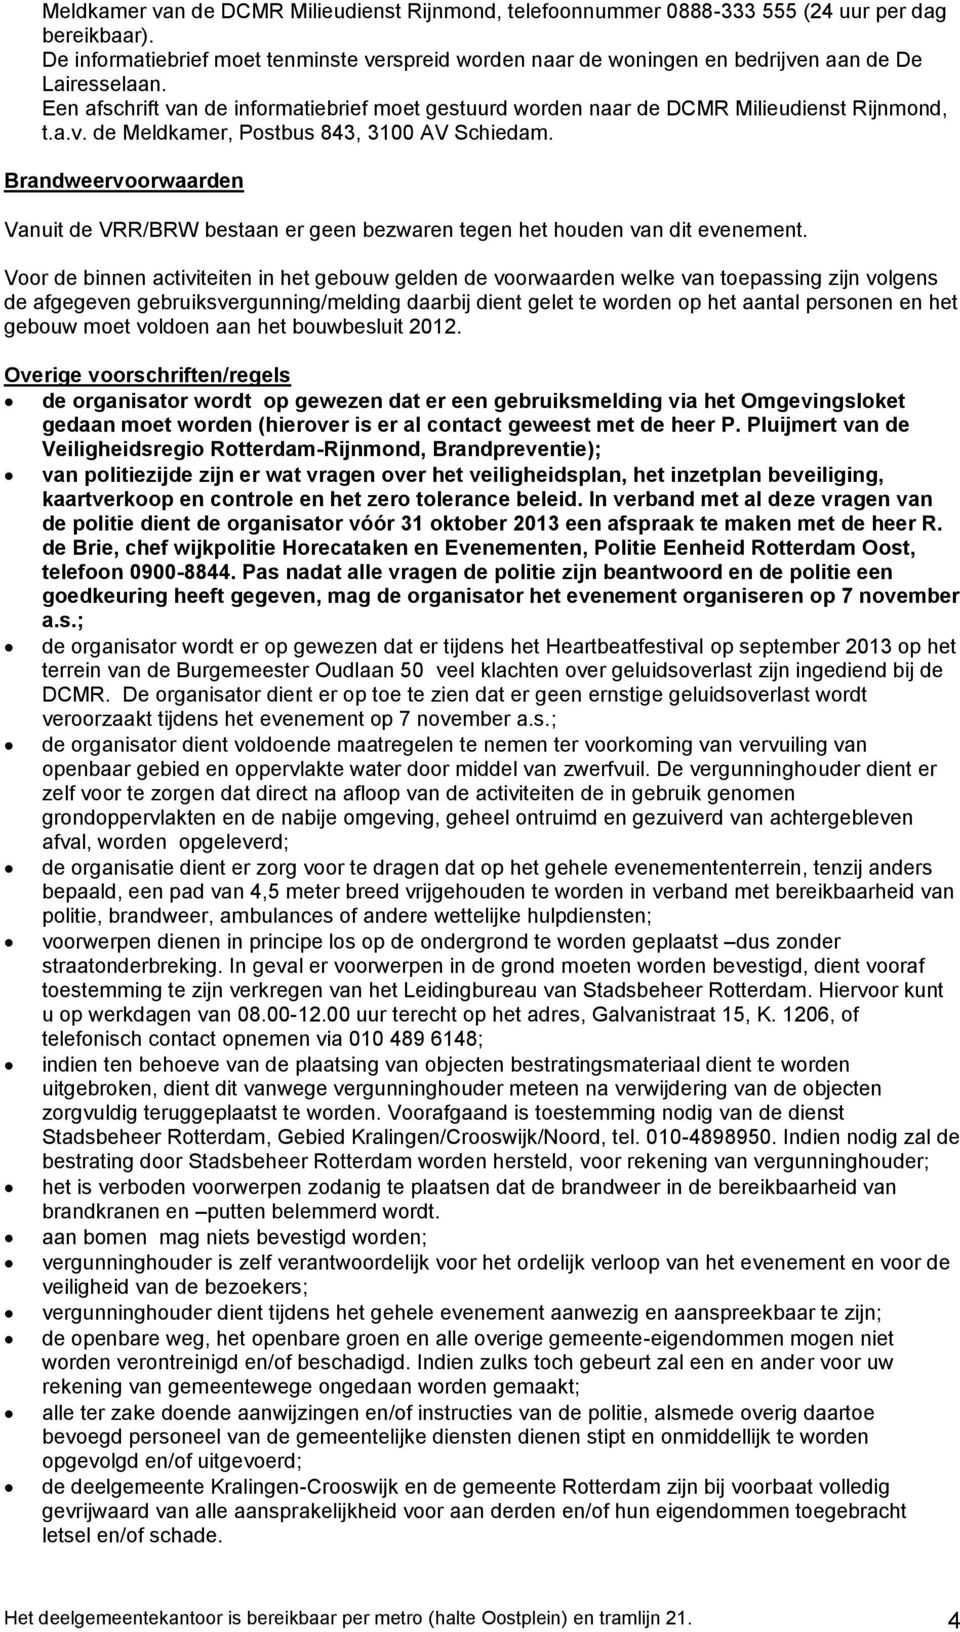 Een afschrift van de informatiebrief moet gestuurd worden naar de DCMR Milieudienst Rijnmond, t.a.v. de Meldkamer, Postbus 843, 3100 AV Schiedam.